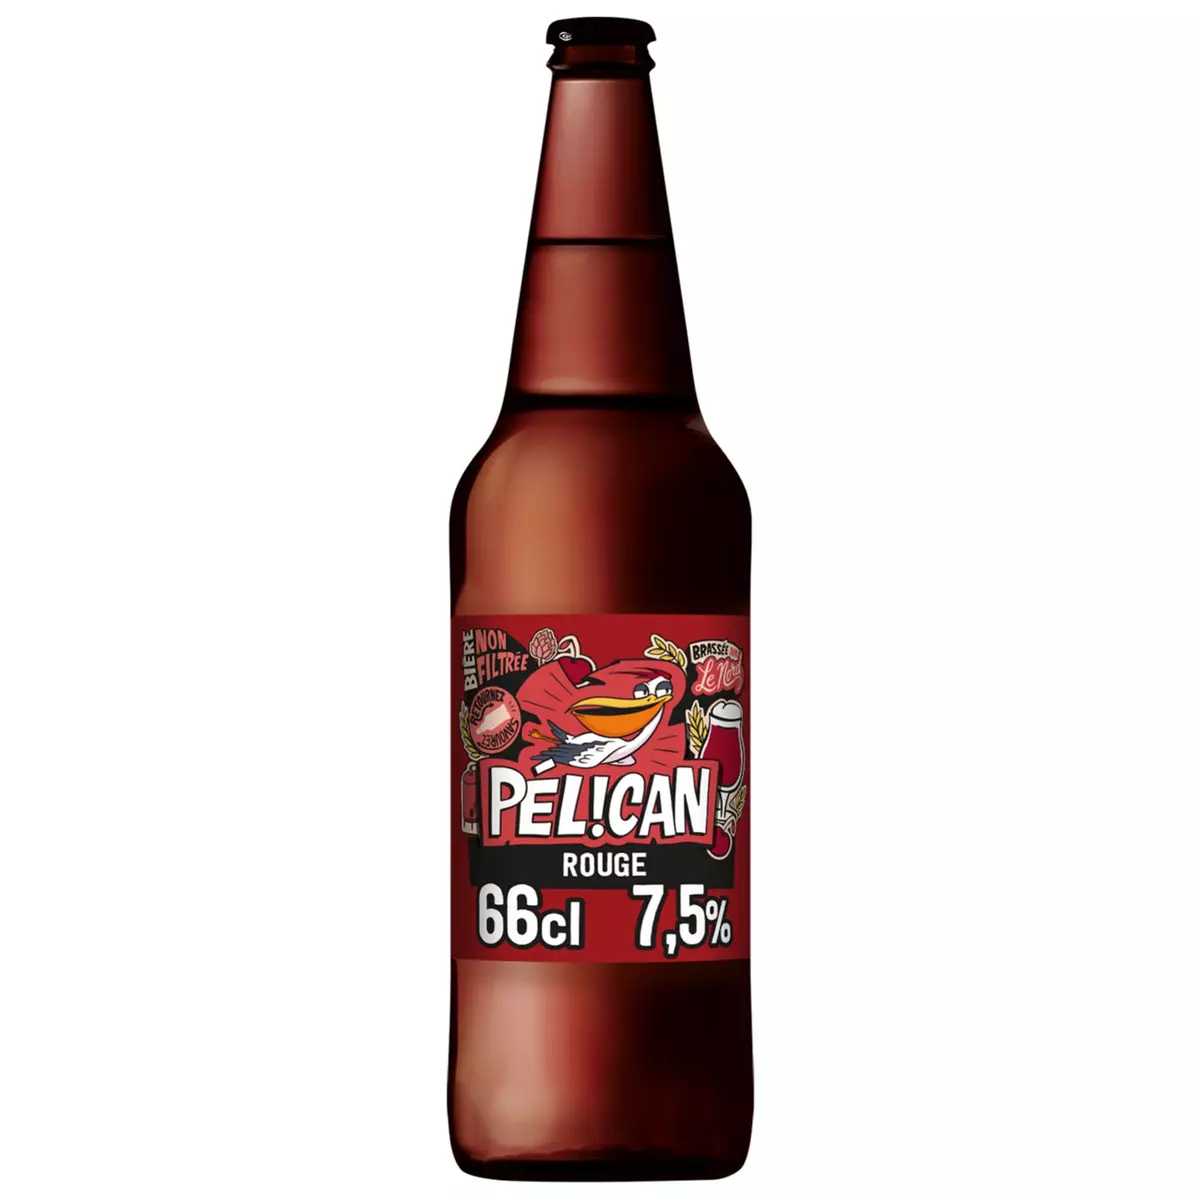 PELICAN Bière rouge 7.5% 66cl